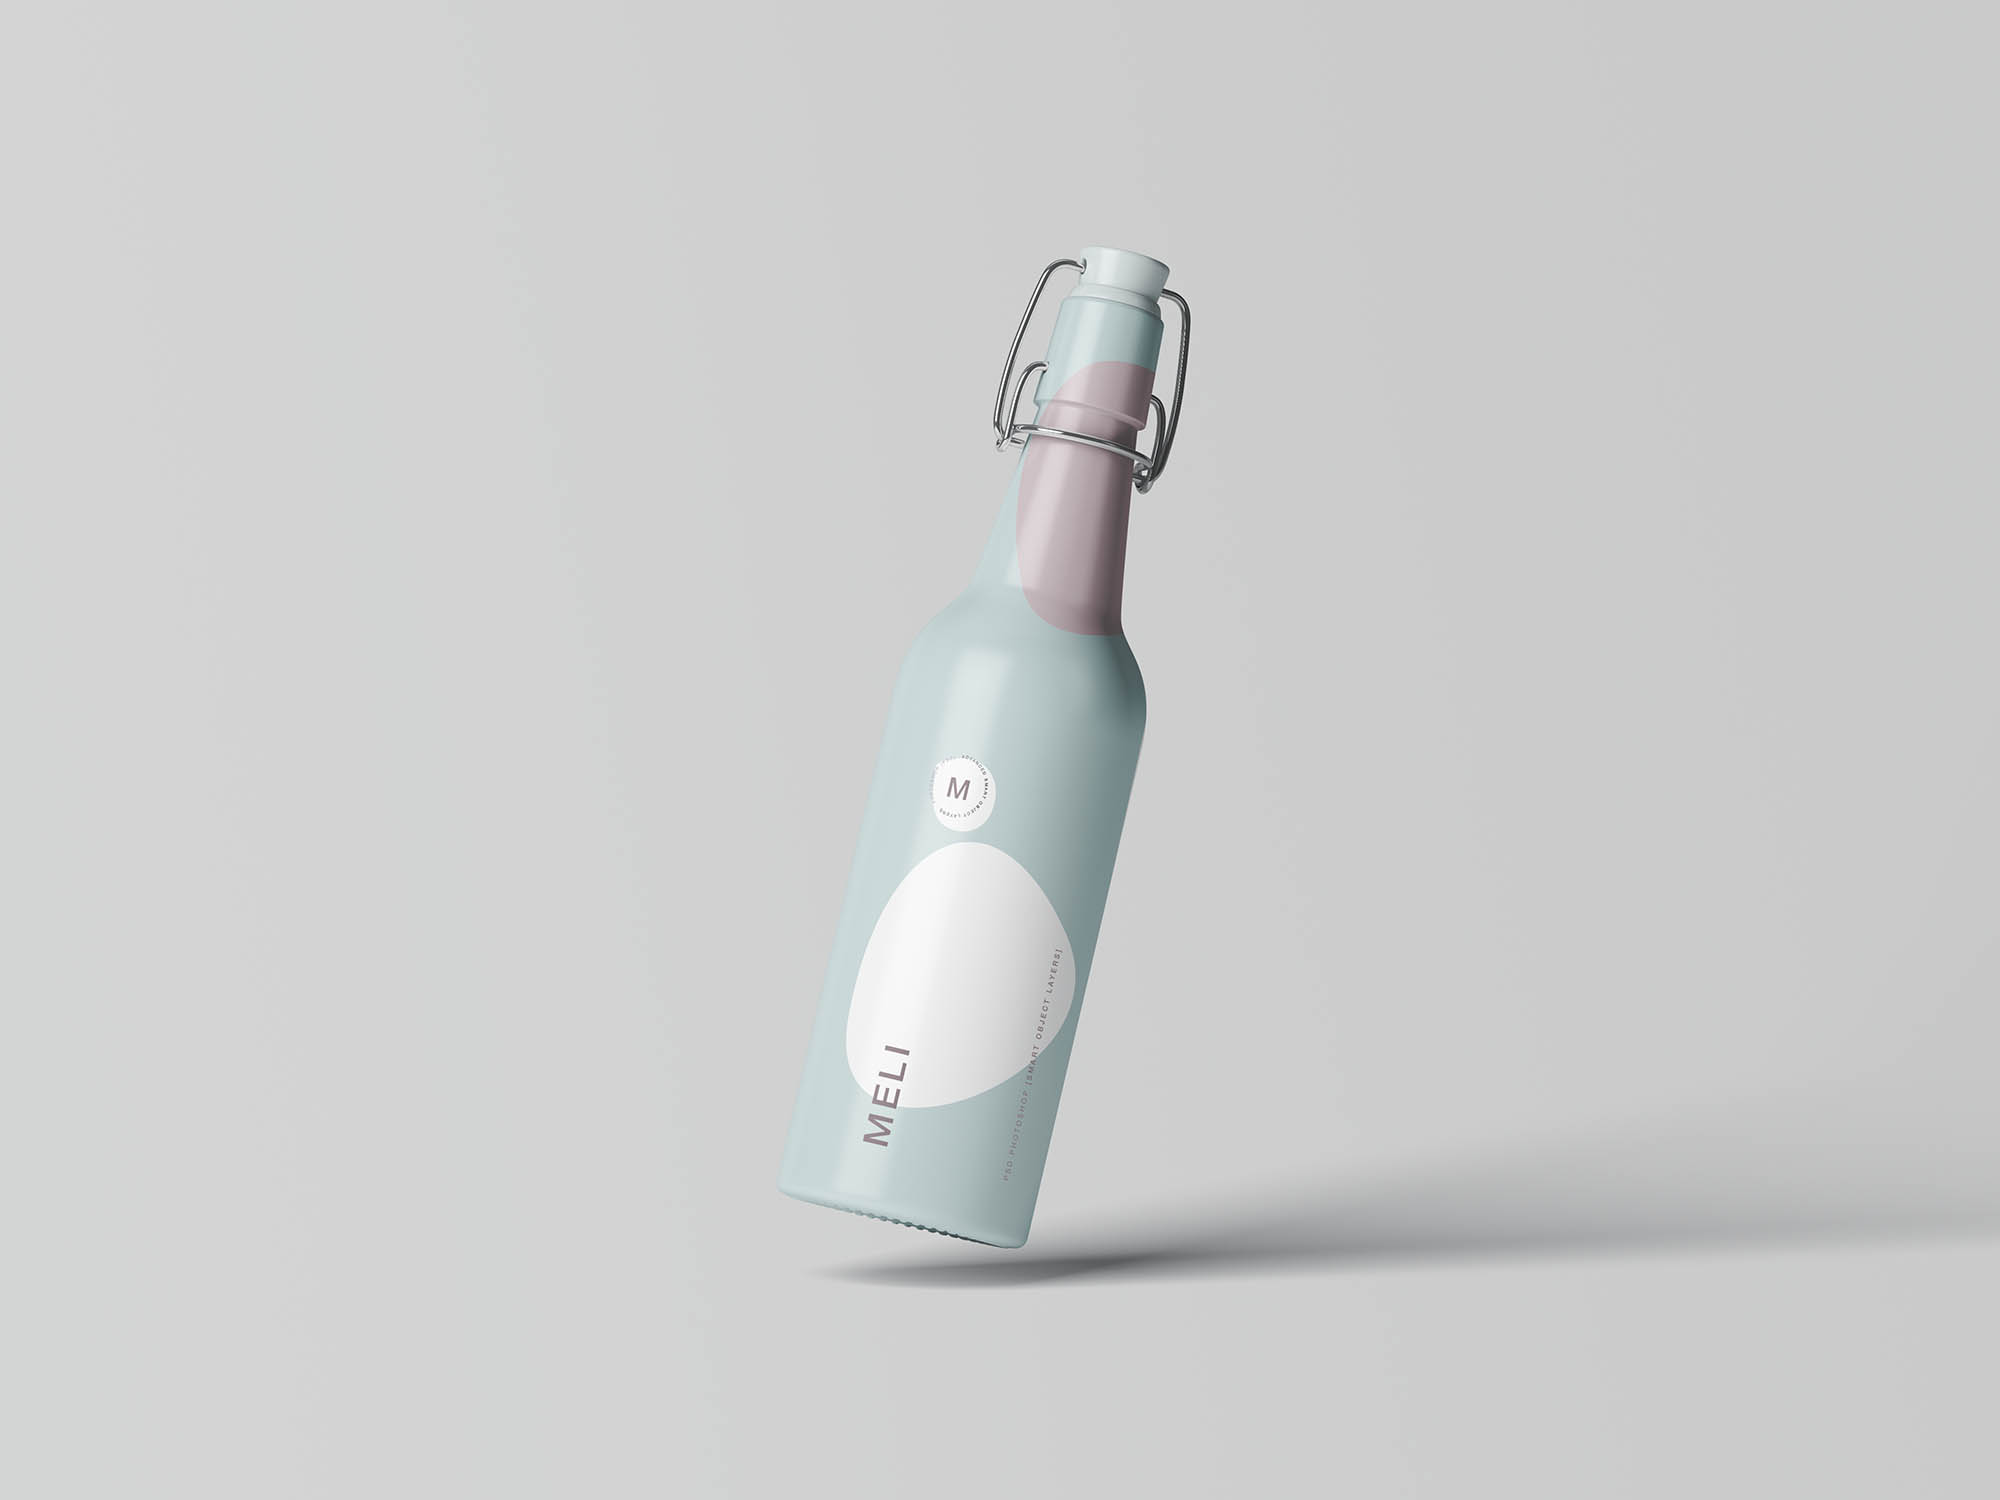 高级软木塞饮料瓶包装设计贴图展示样机模板 Matt Clam